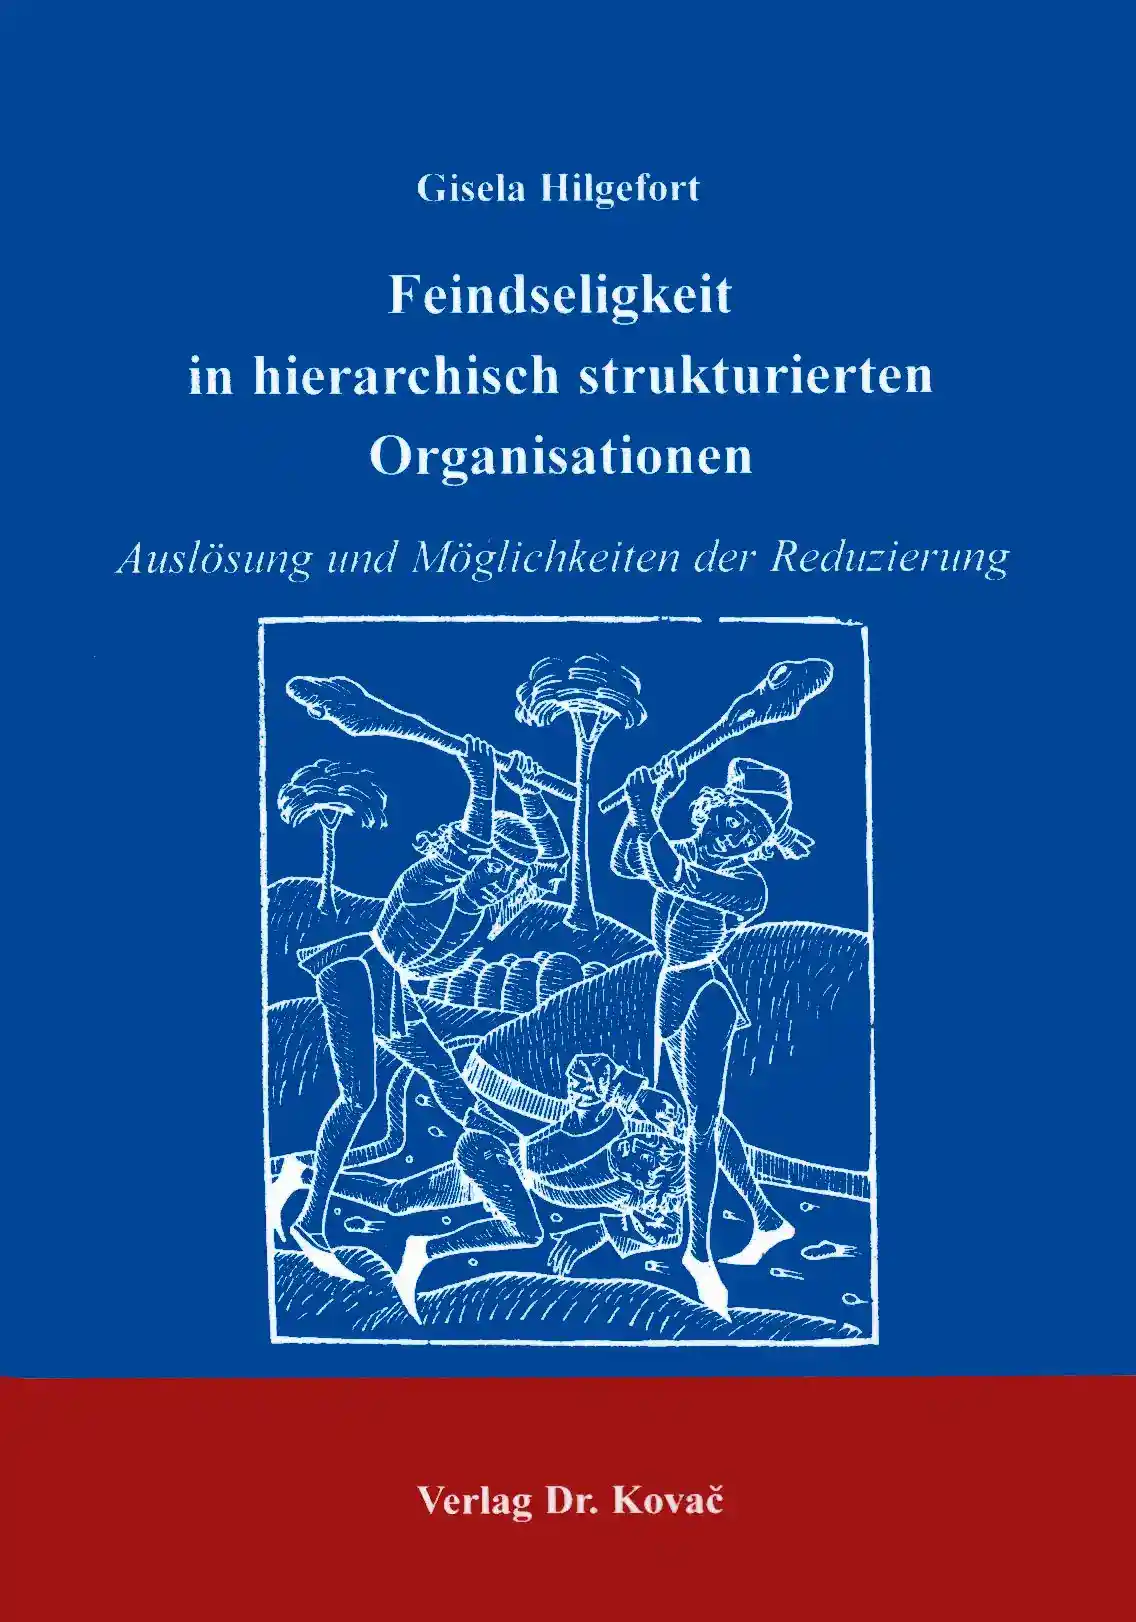  Forschungsarbeit: Feindseligkeit in hierarchisch strukturierten Organisationen